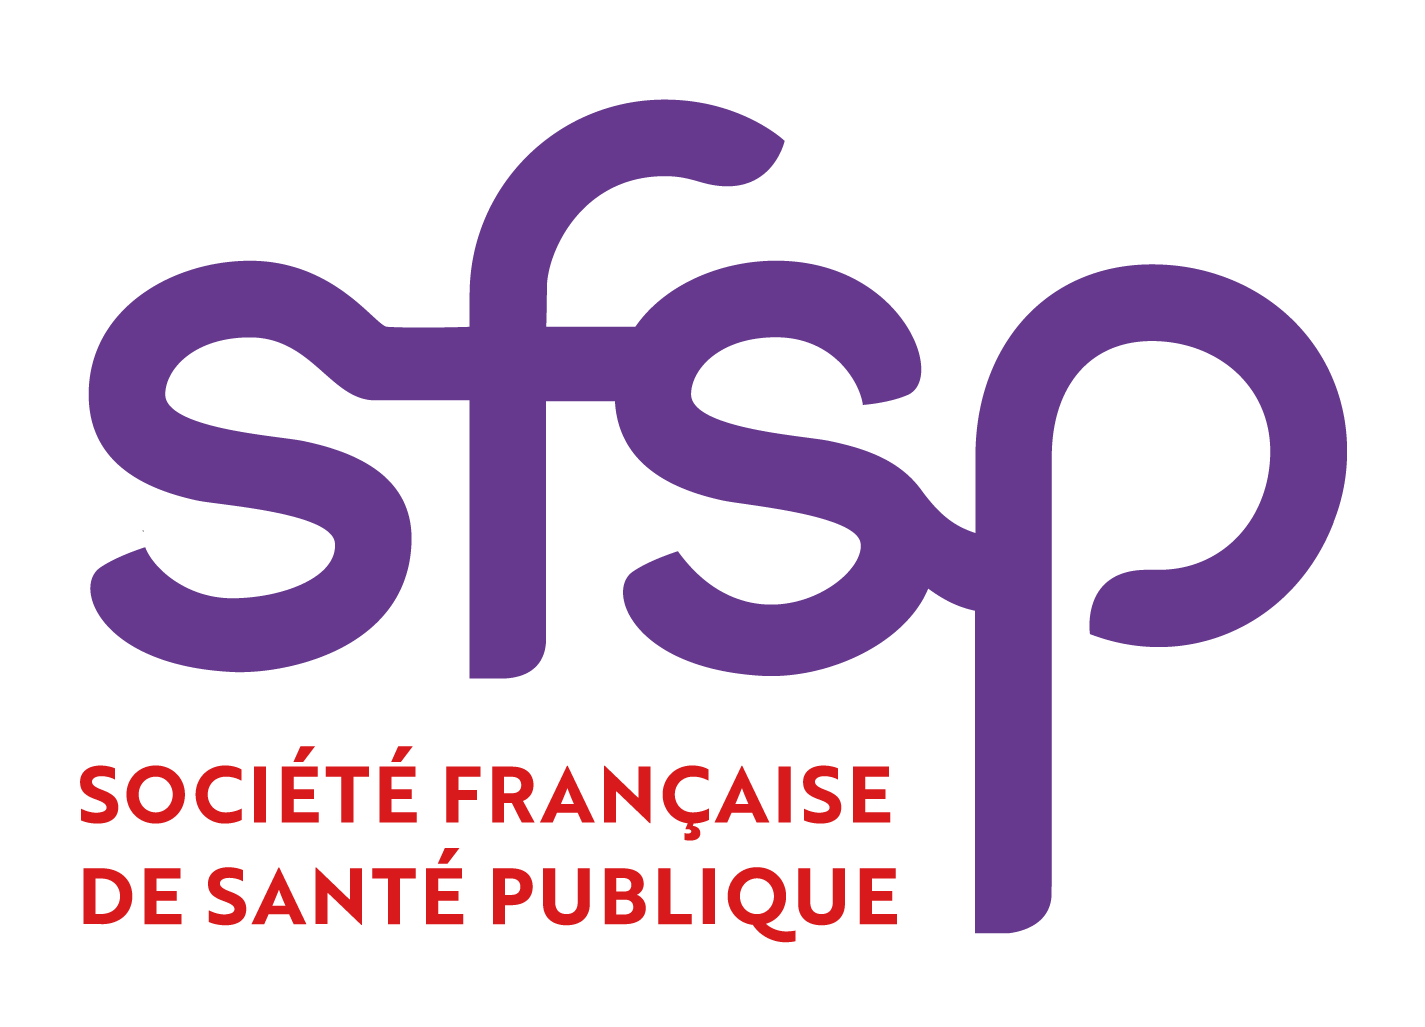 La Société Française de Santé Publique